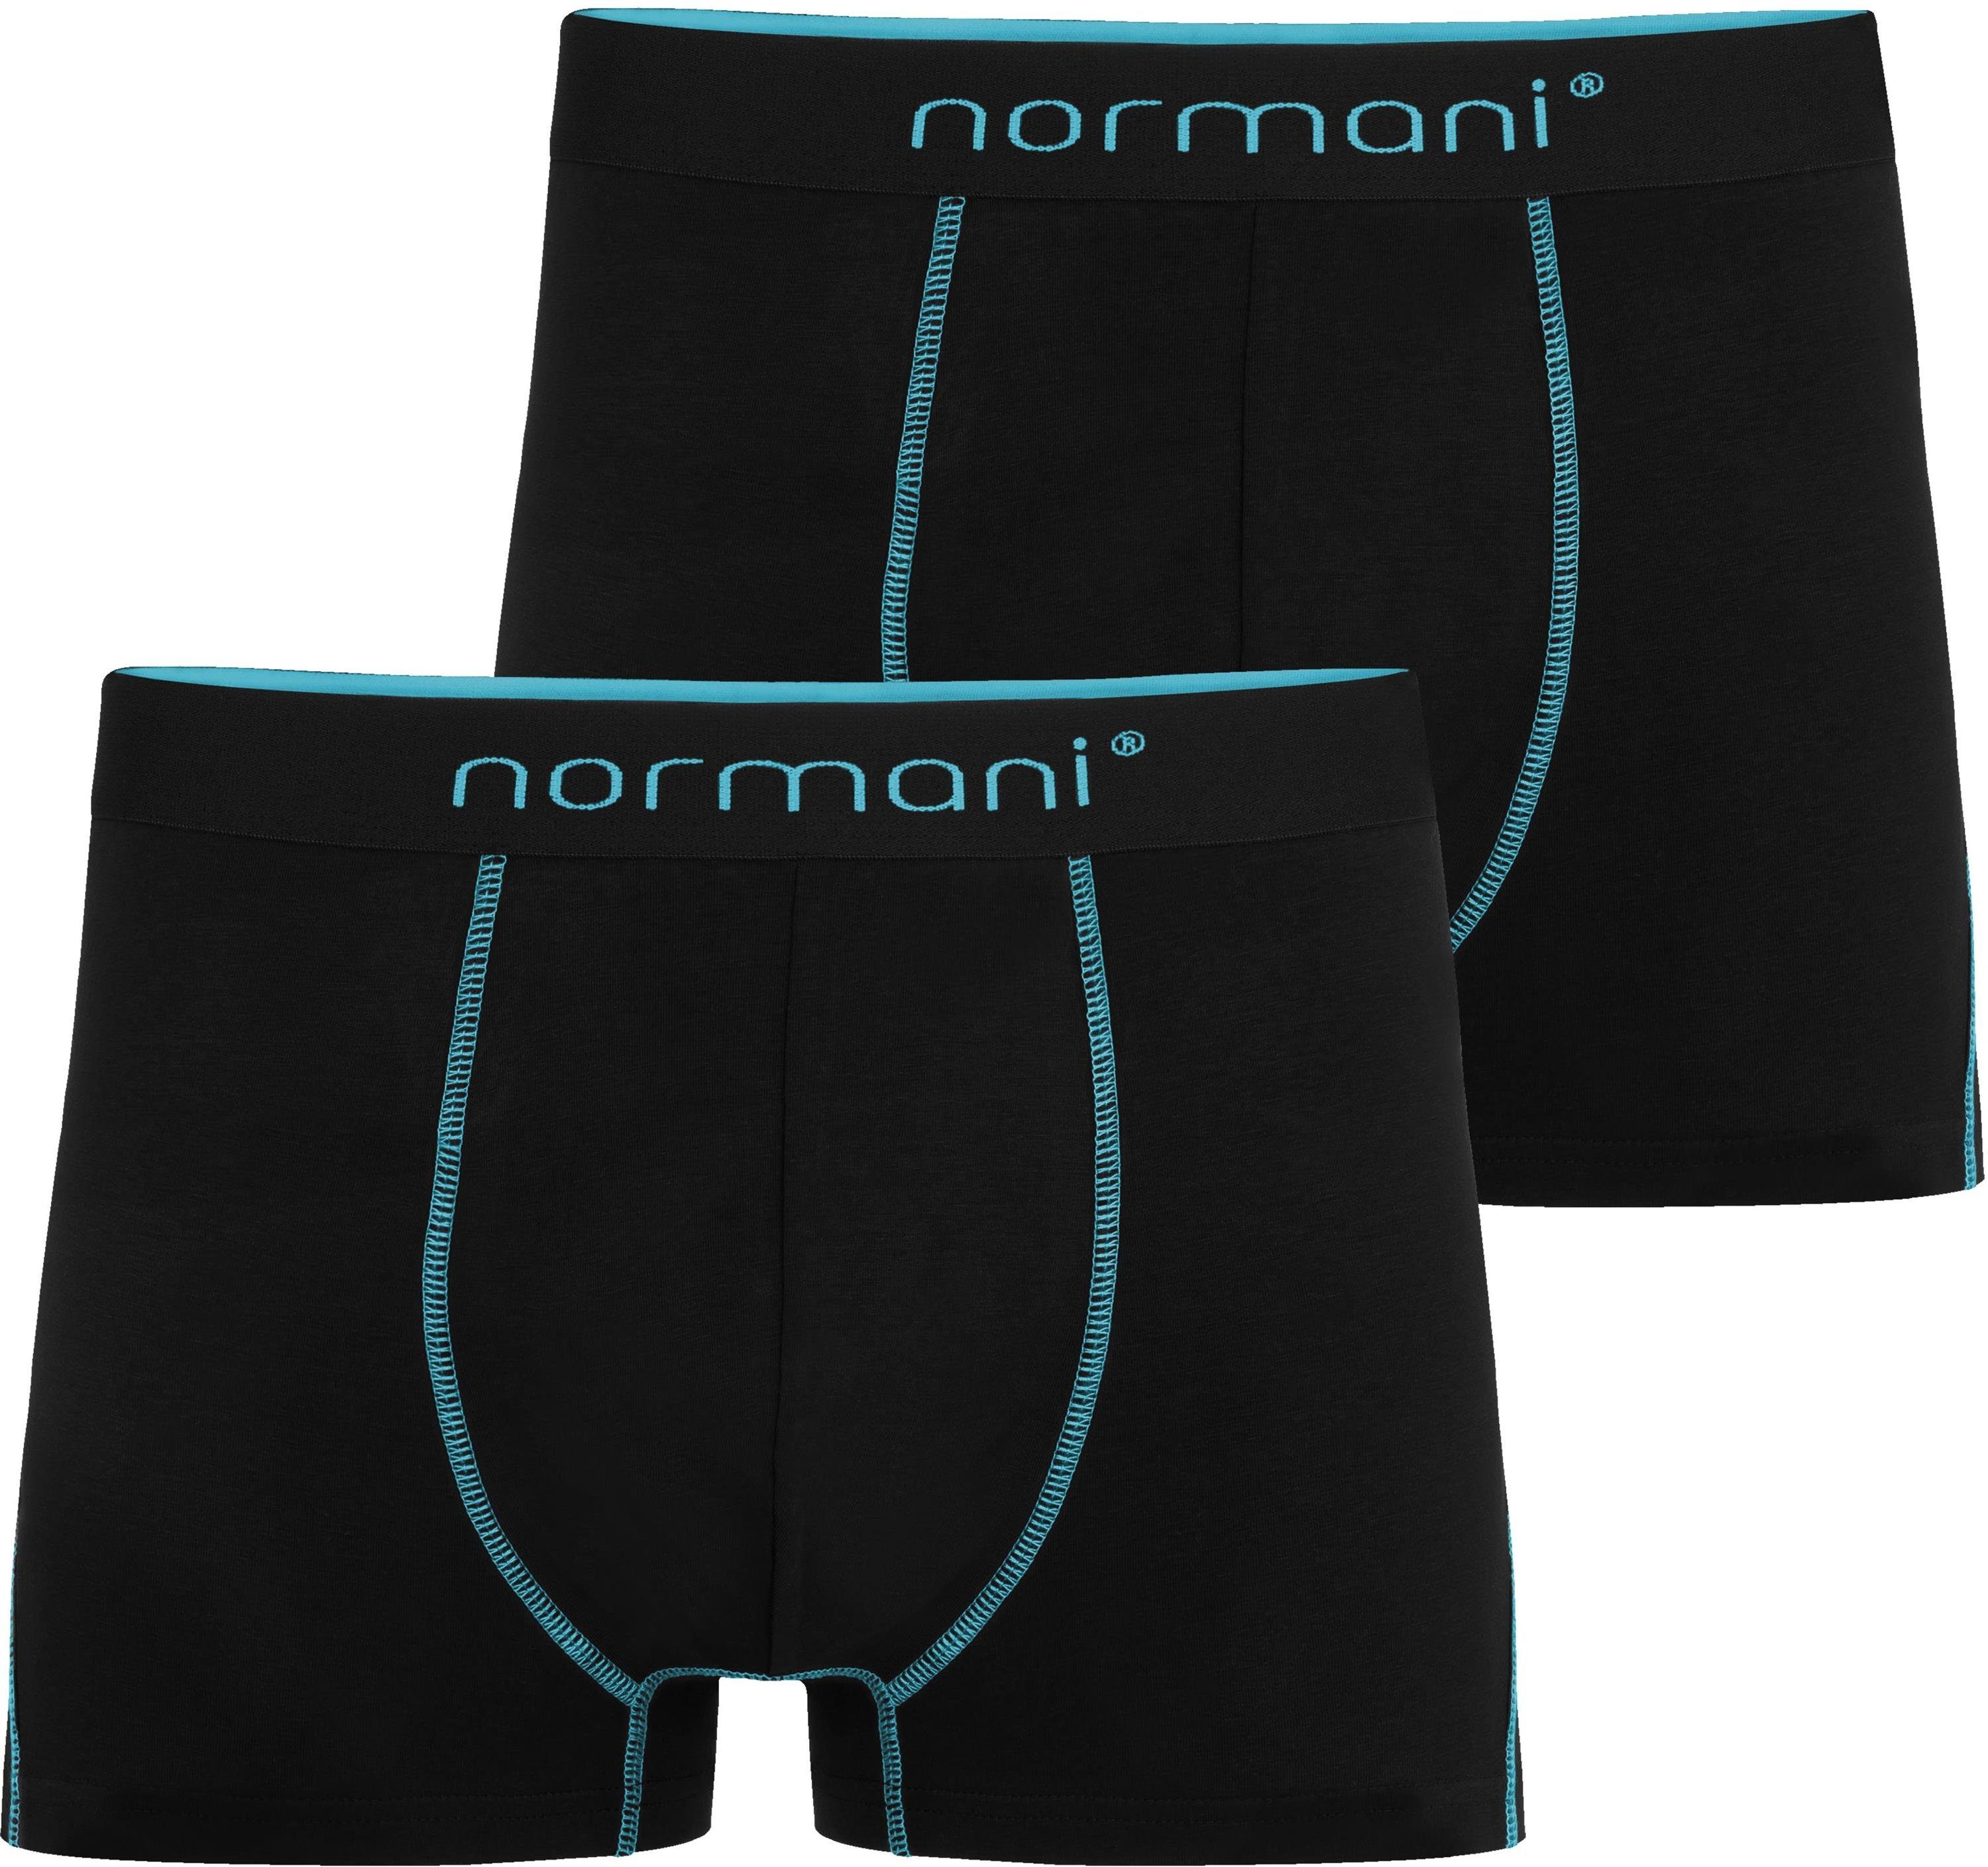 Männer Herren 2 Unterhose atmungsaktiver normani Boxershorts Türkis für Stanley aus Baumwolle Boxershorts